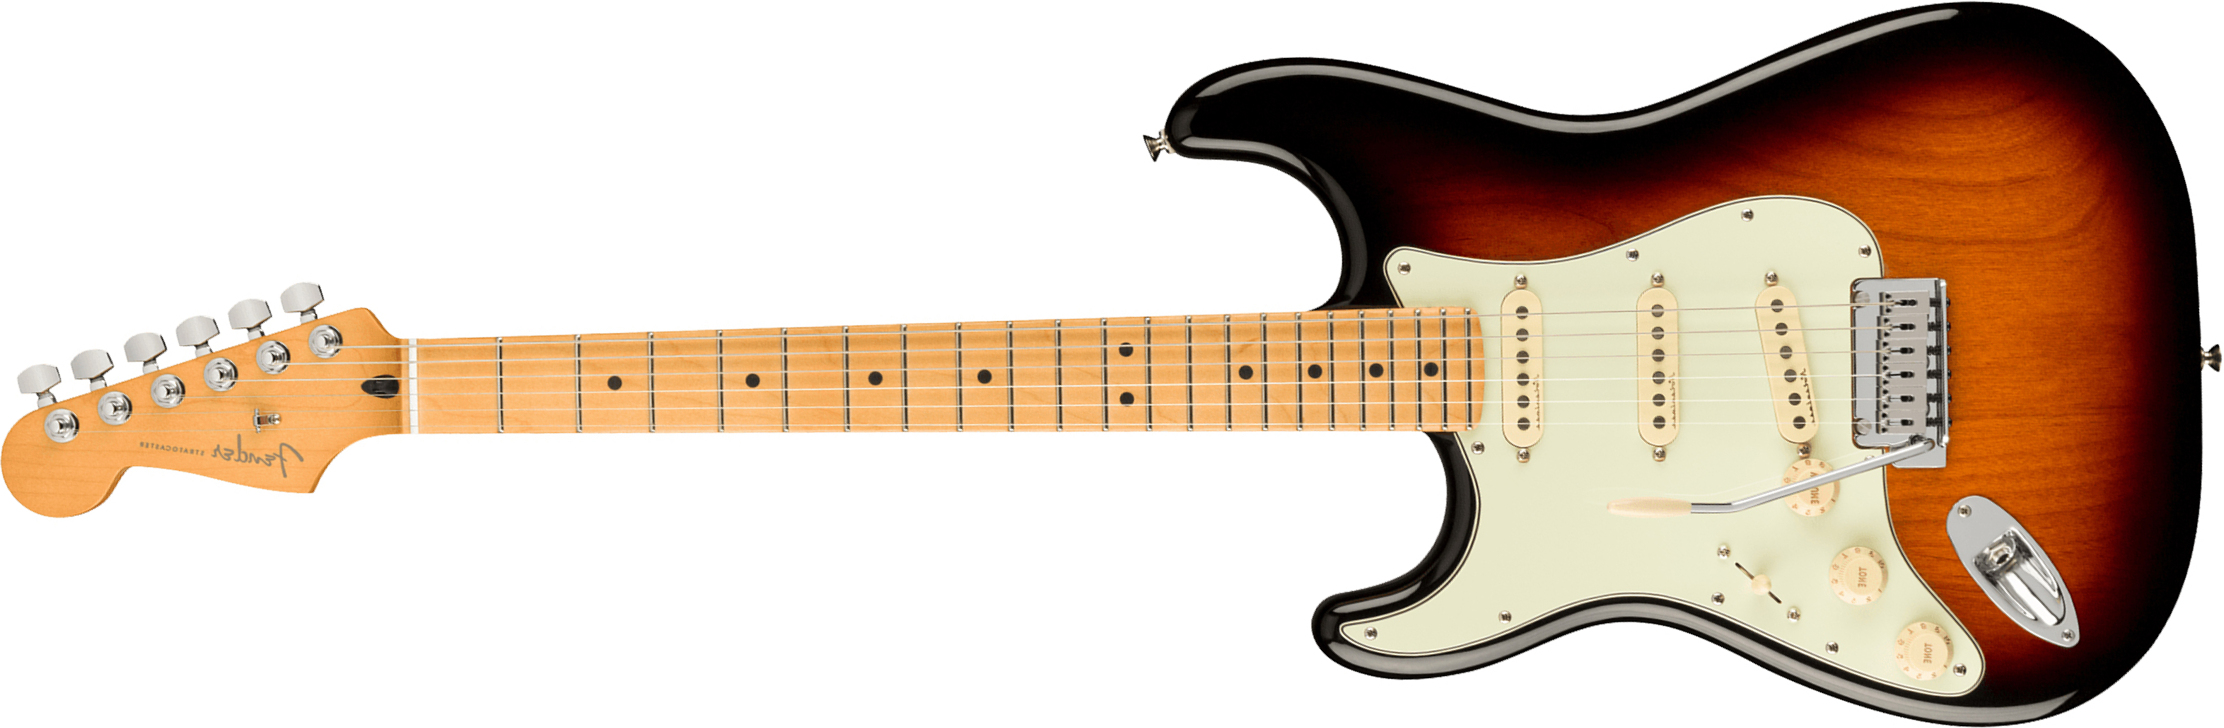 Fender Strat Player Plus Lh Mex Gaucher 3s Trem Mn - 3-color Sunburst - Linkshandige elektrische gitaar - Main picture